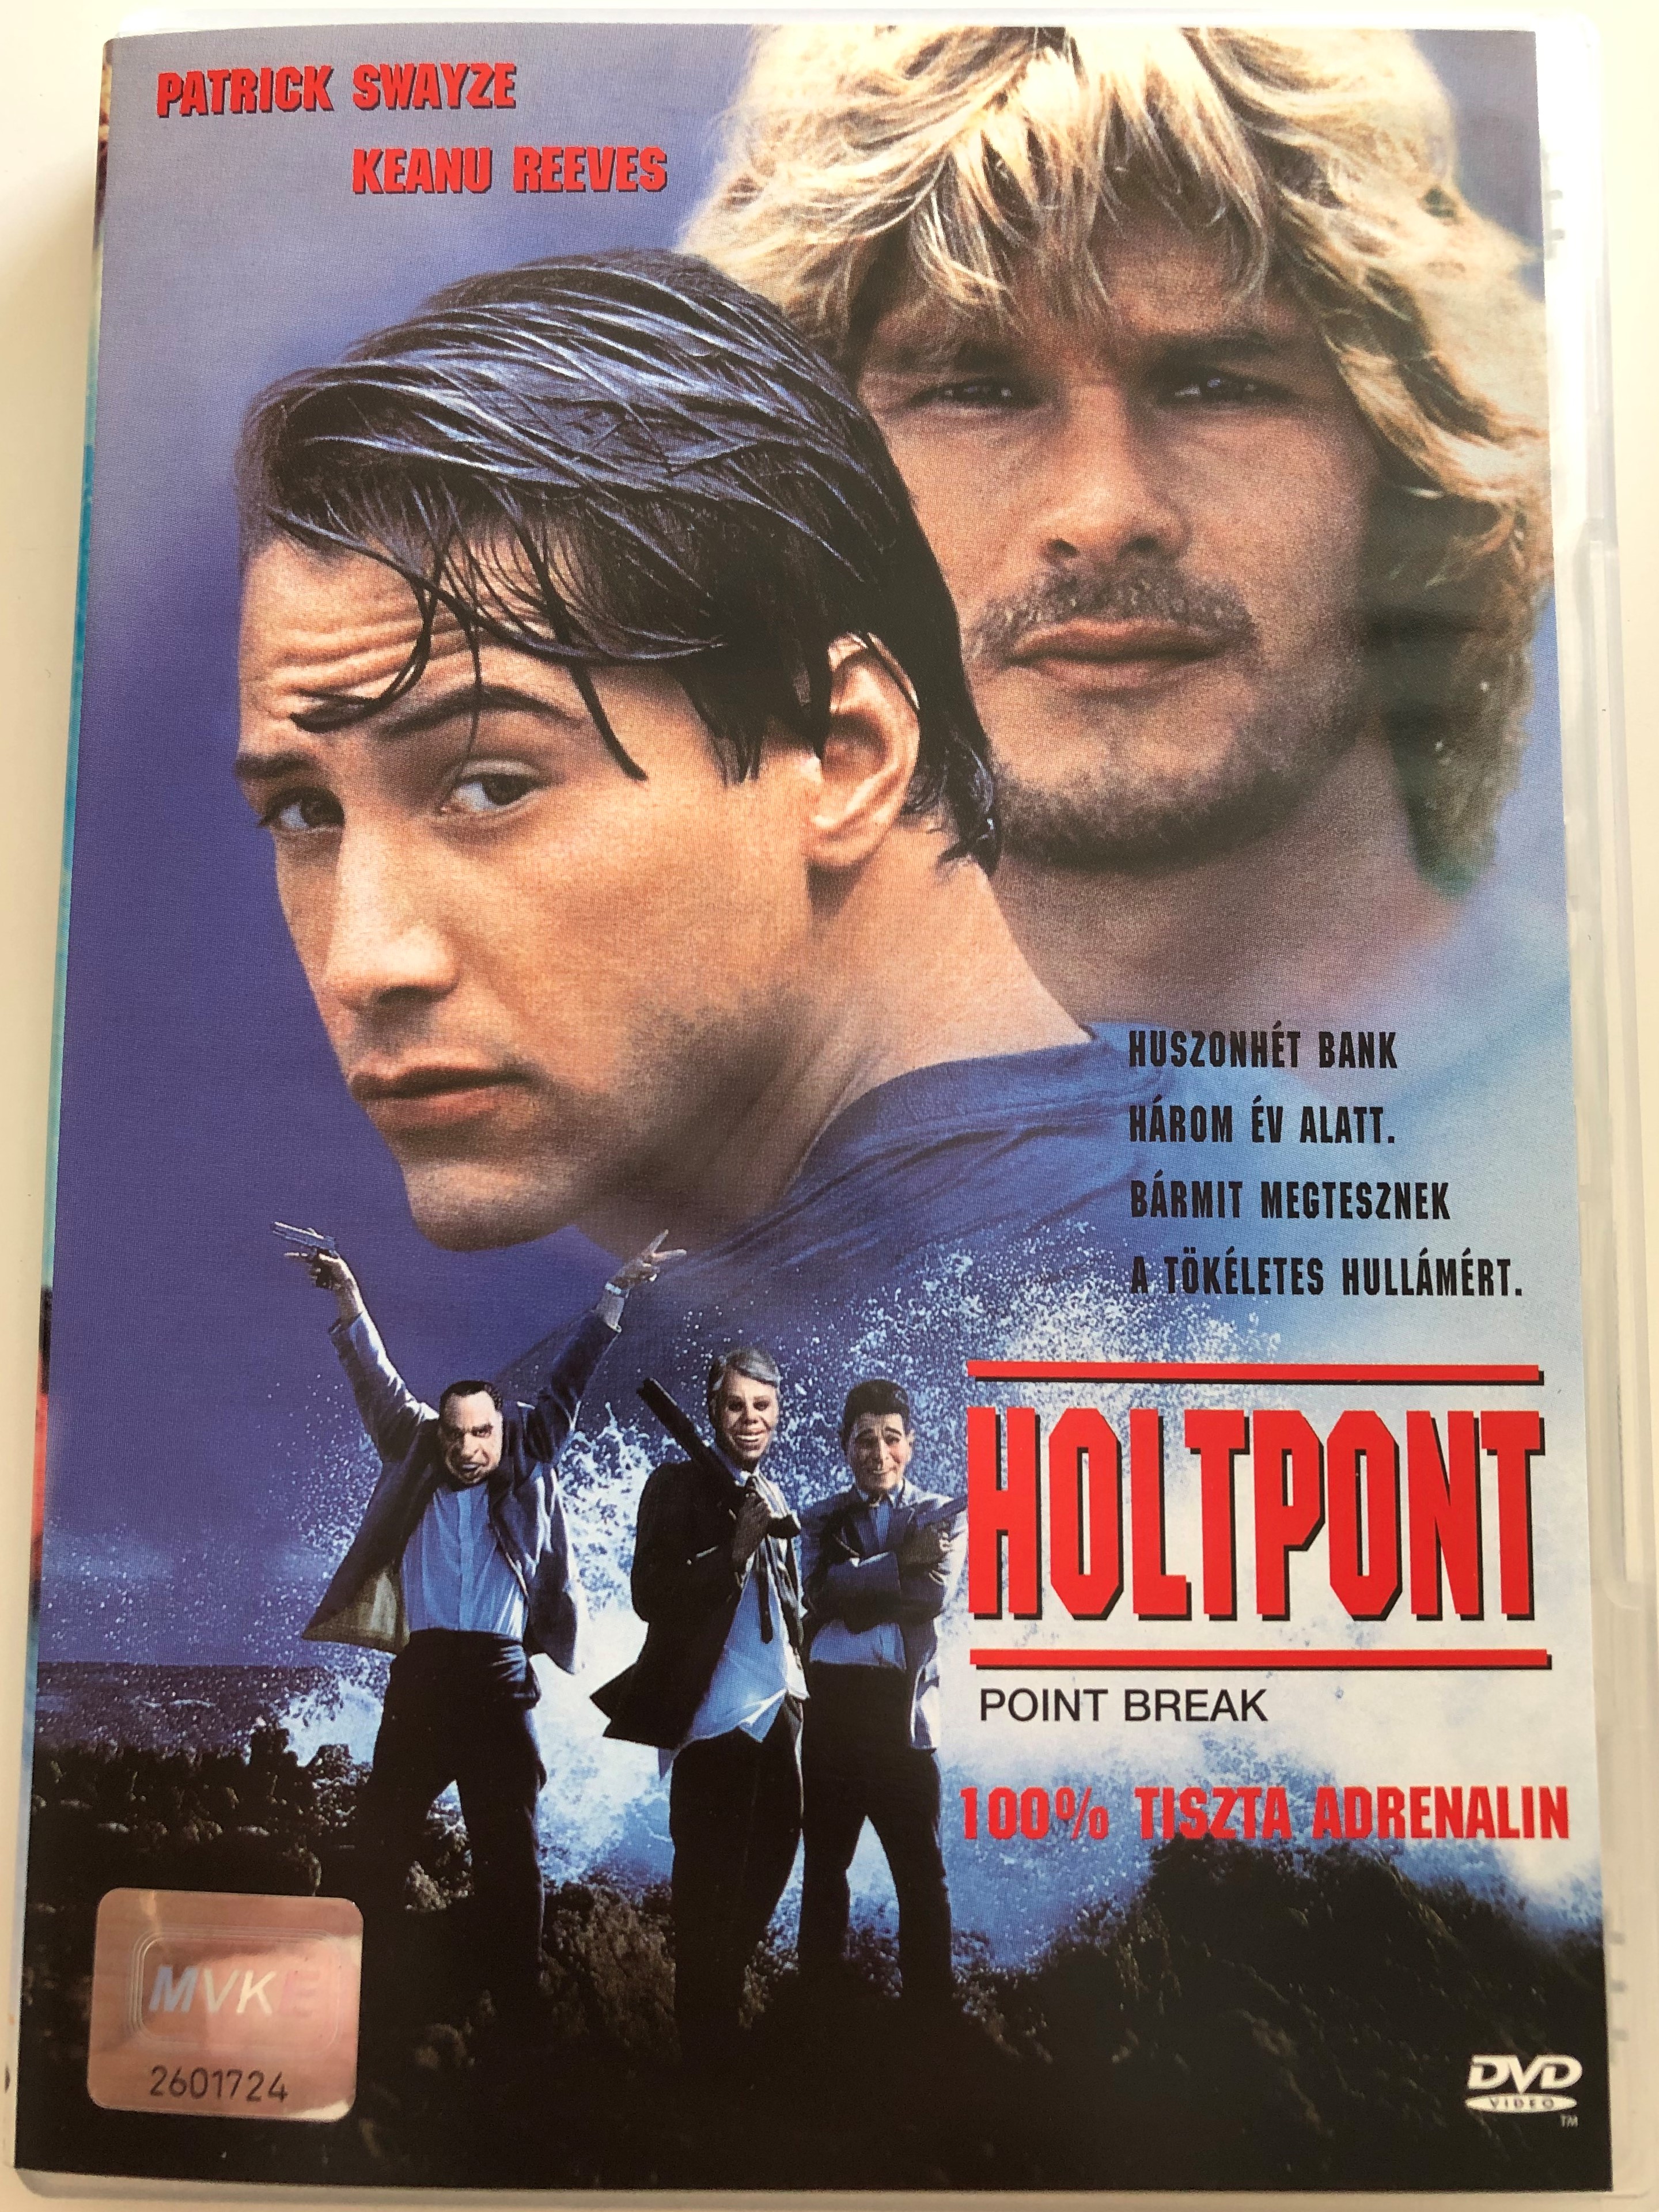 Point break DVD 1991 Holtpont / Directed by Kathryn Bigelow / Starring:  Patrick Swayze, Keanu Reeves - bibleinmylanguage